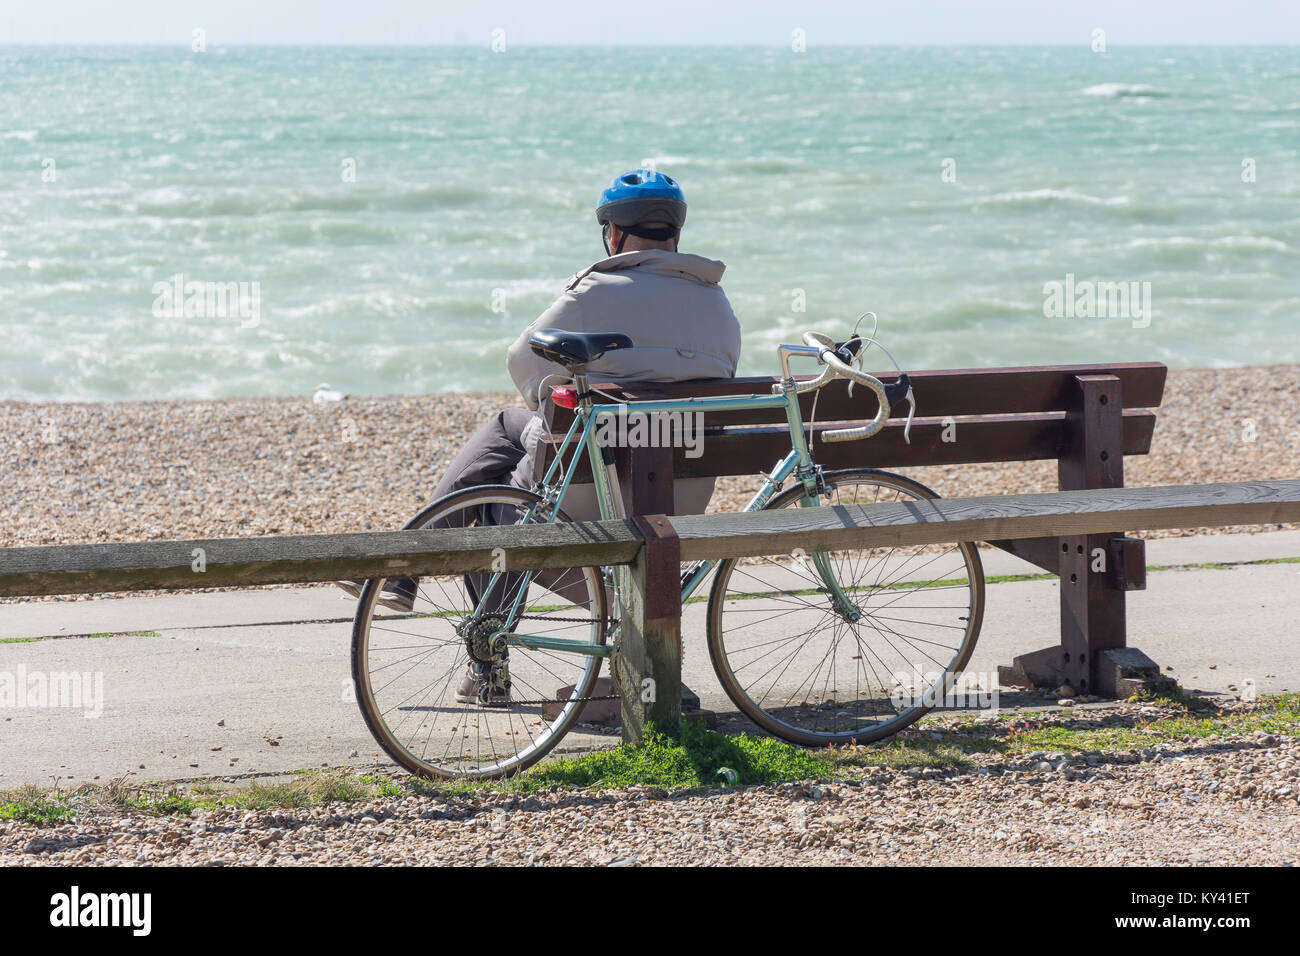 Le cycliste se détendre sur la plage, esplanade, Seaford Seaford, East Sussex, Angleterre, Royaume-Uni Banque D'Images